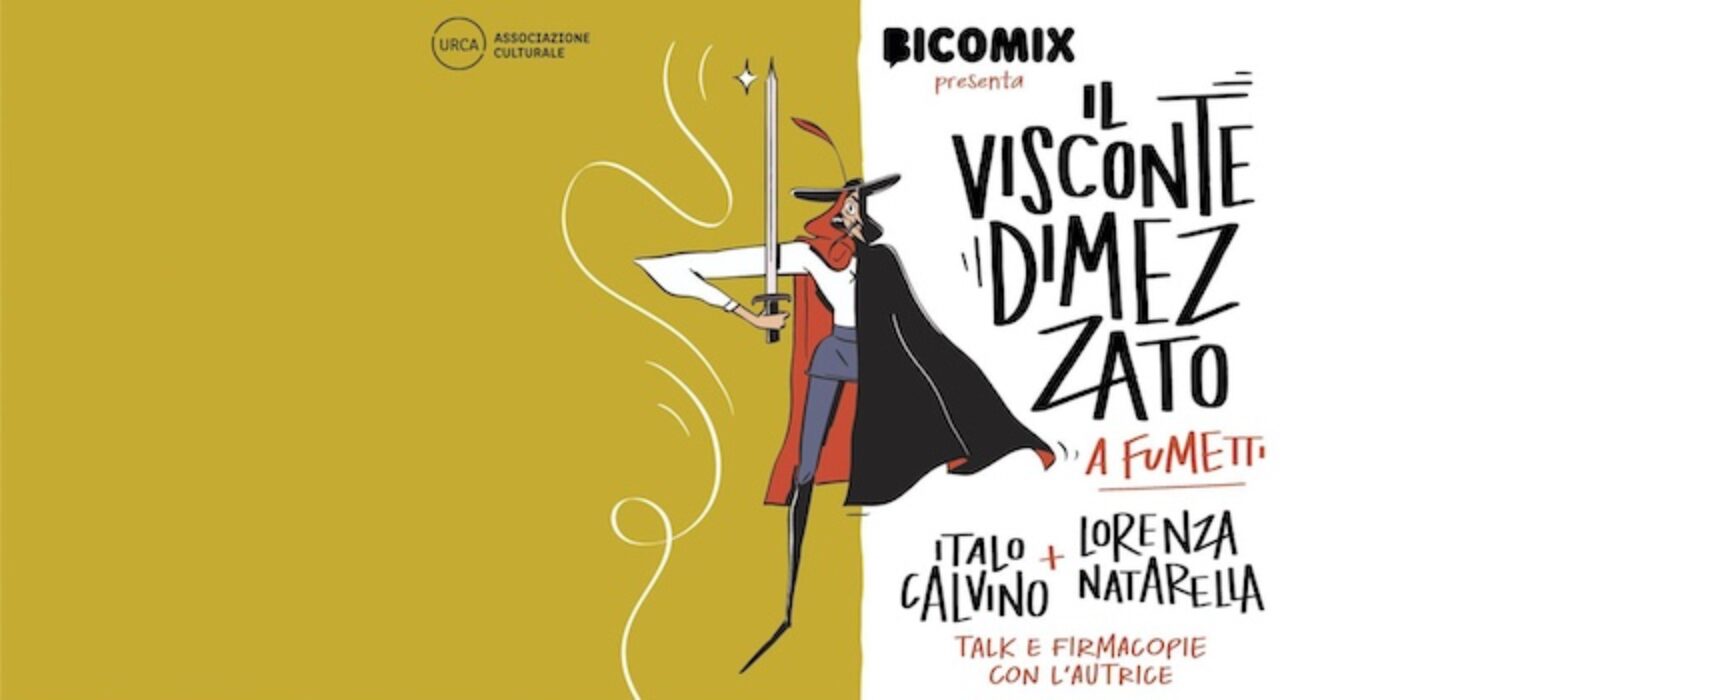 Italo Calvino a fumetti: incontro a Bisceglie con l’autrice Lorenza Natarella